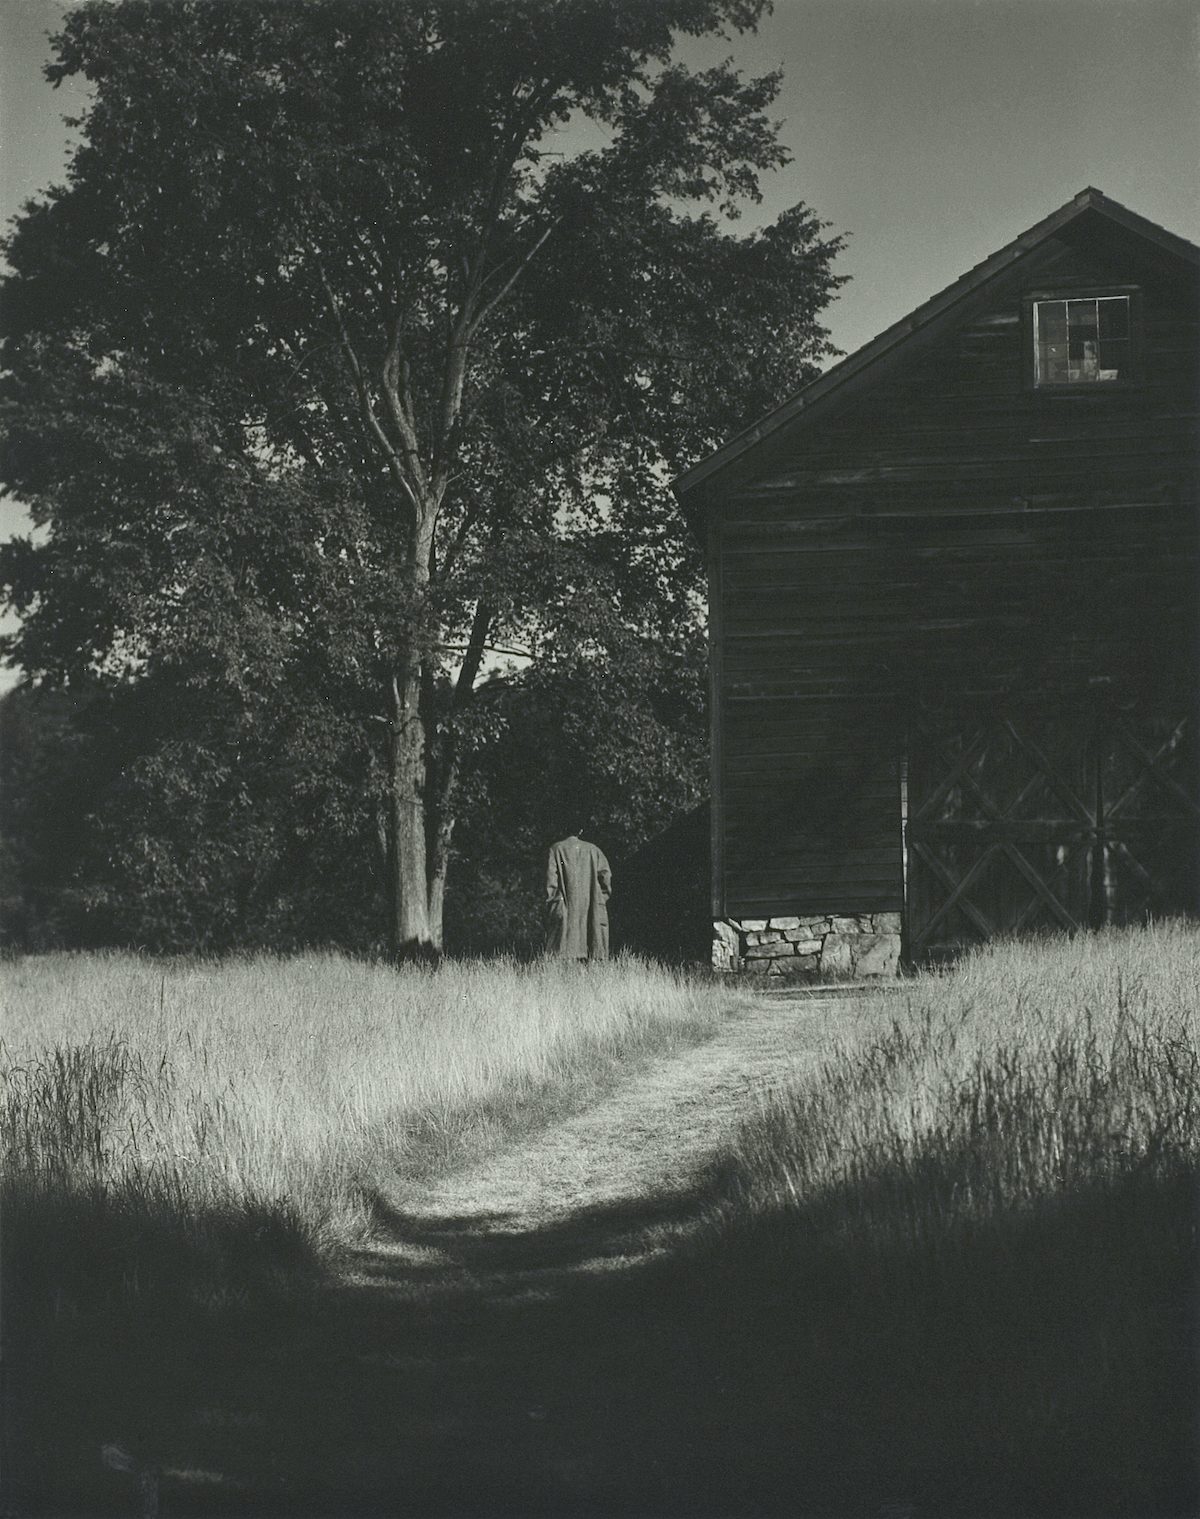 Barn, Lake George (1936) by Alfred Stieglitz. 